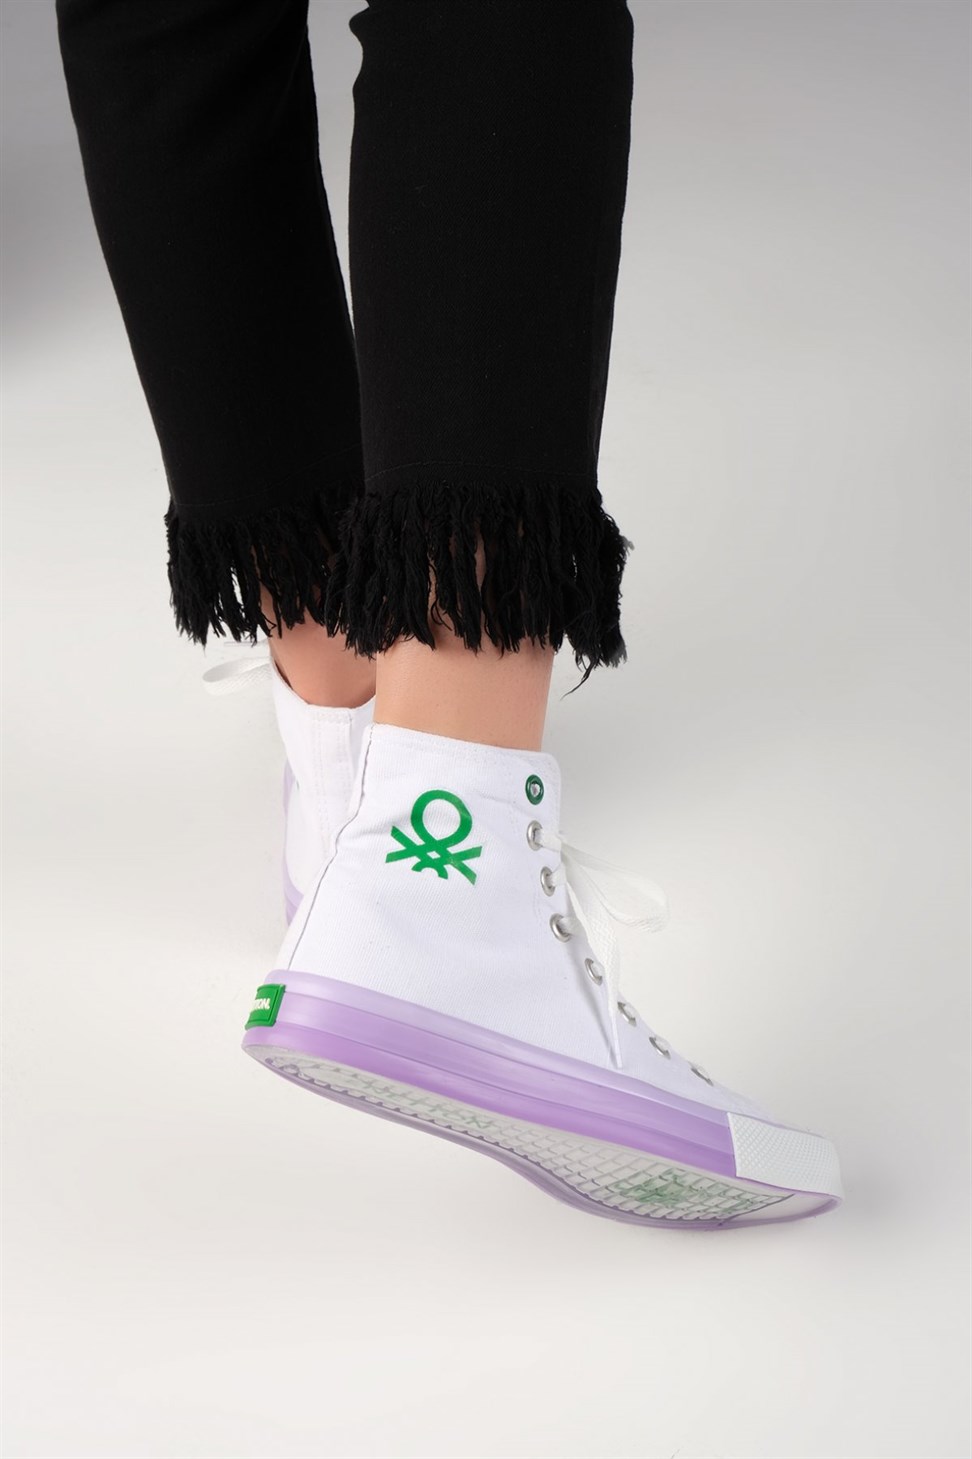 Kadın Benetton Renkli Tabanlı Boğazlı Bez Spor Ayakkabı BEYAZ/LİLA